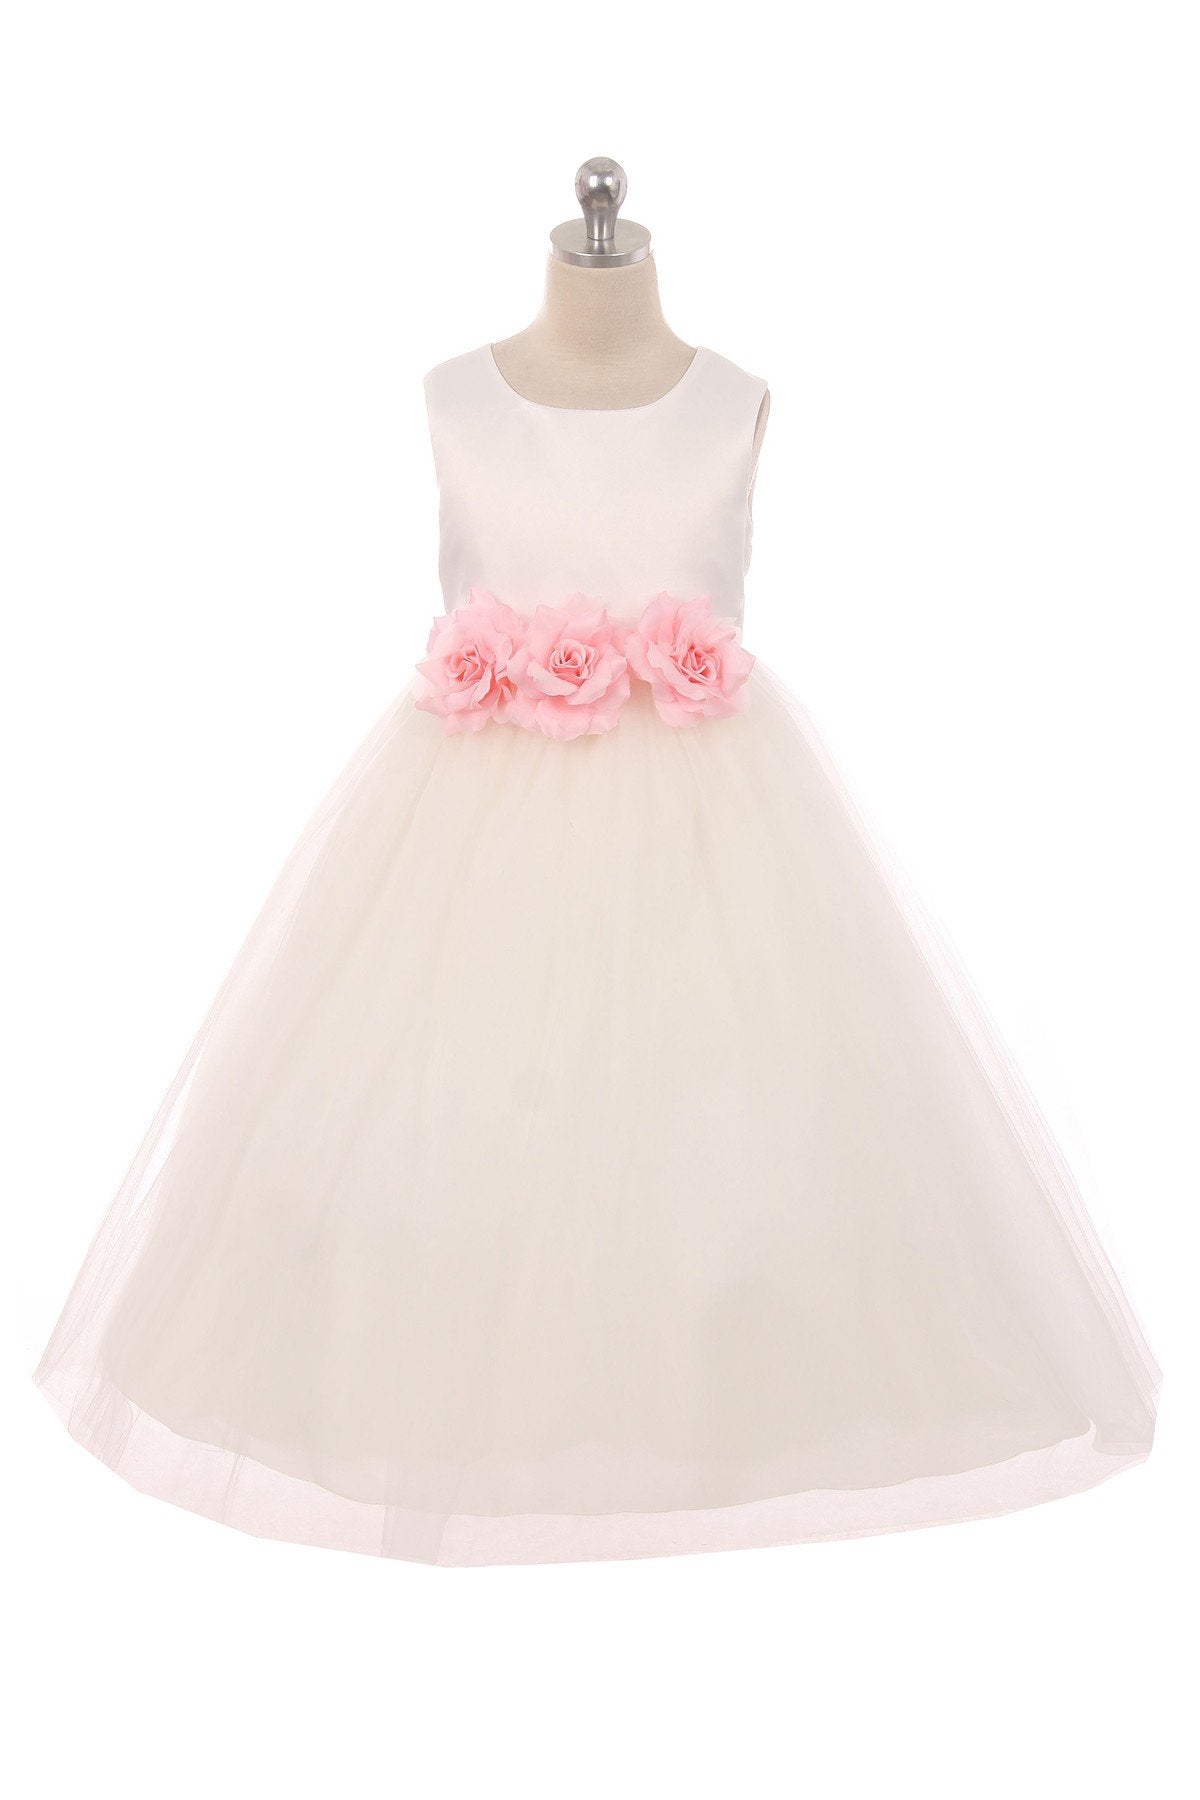 Dress - Satin 3 Flower White Dress